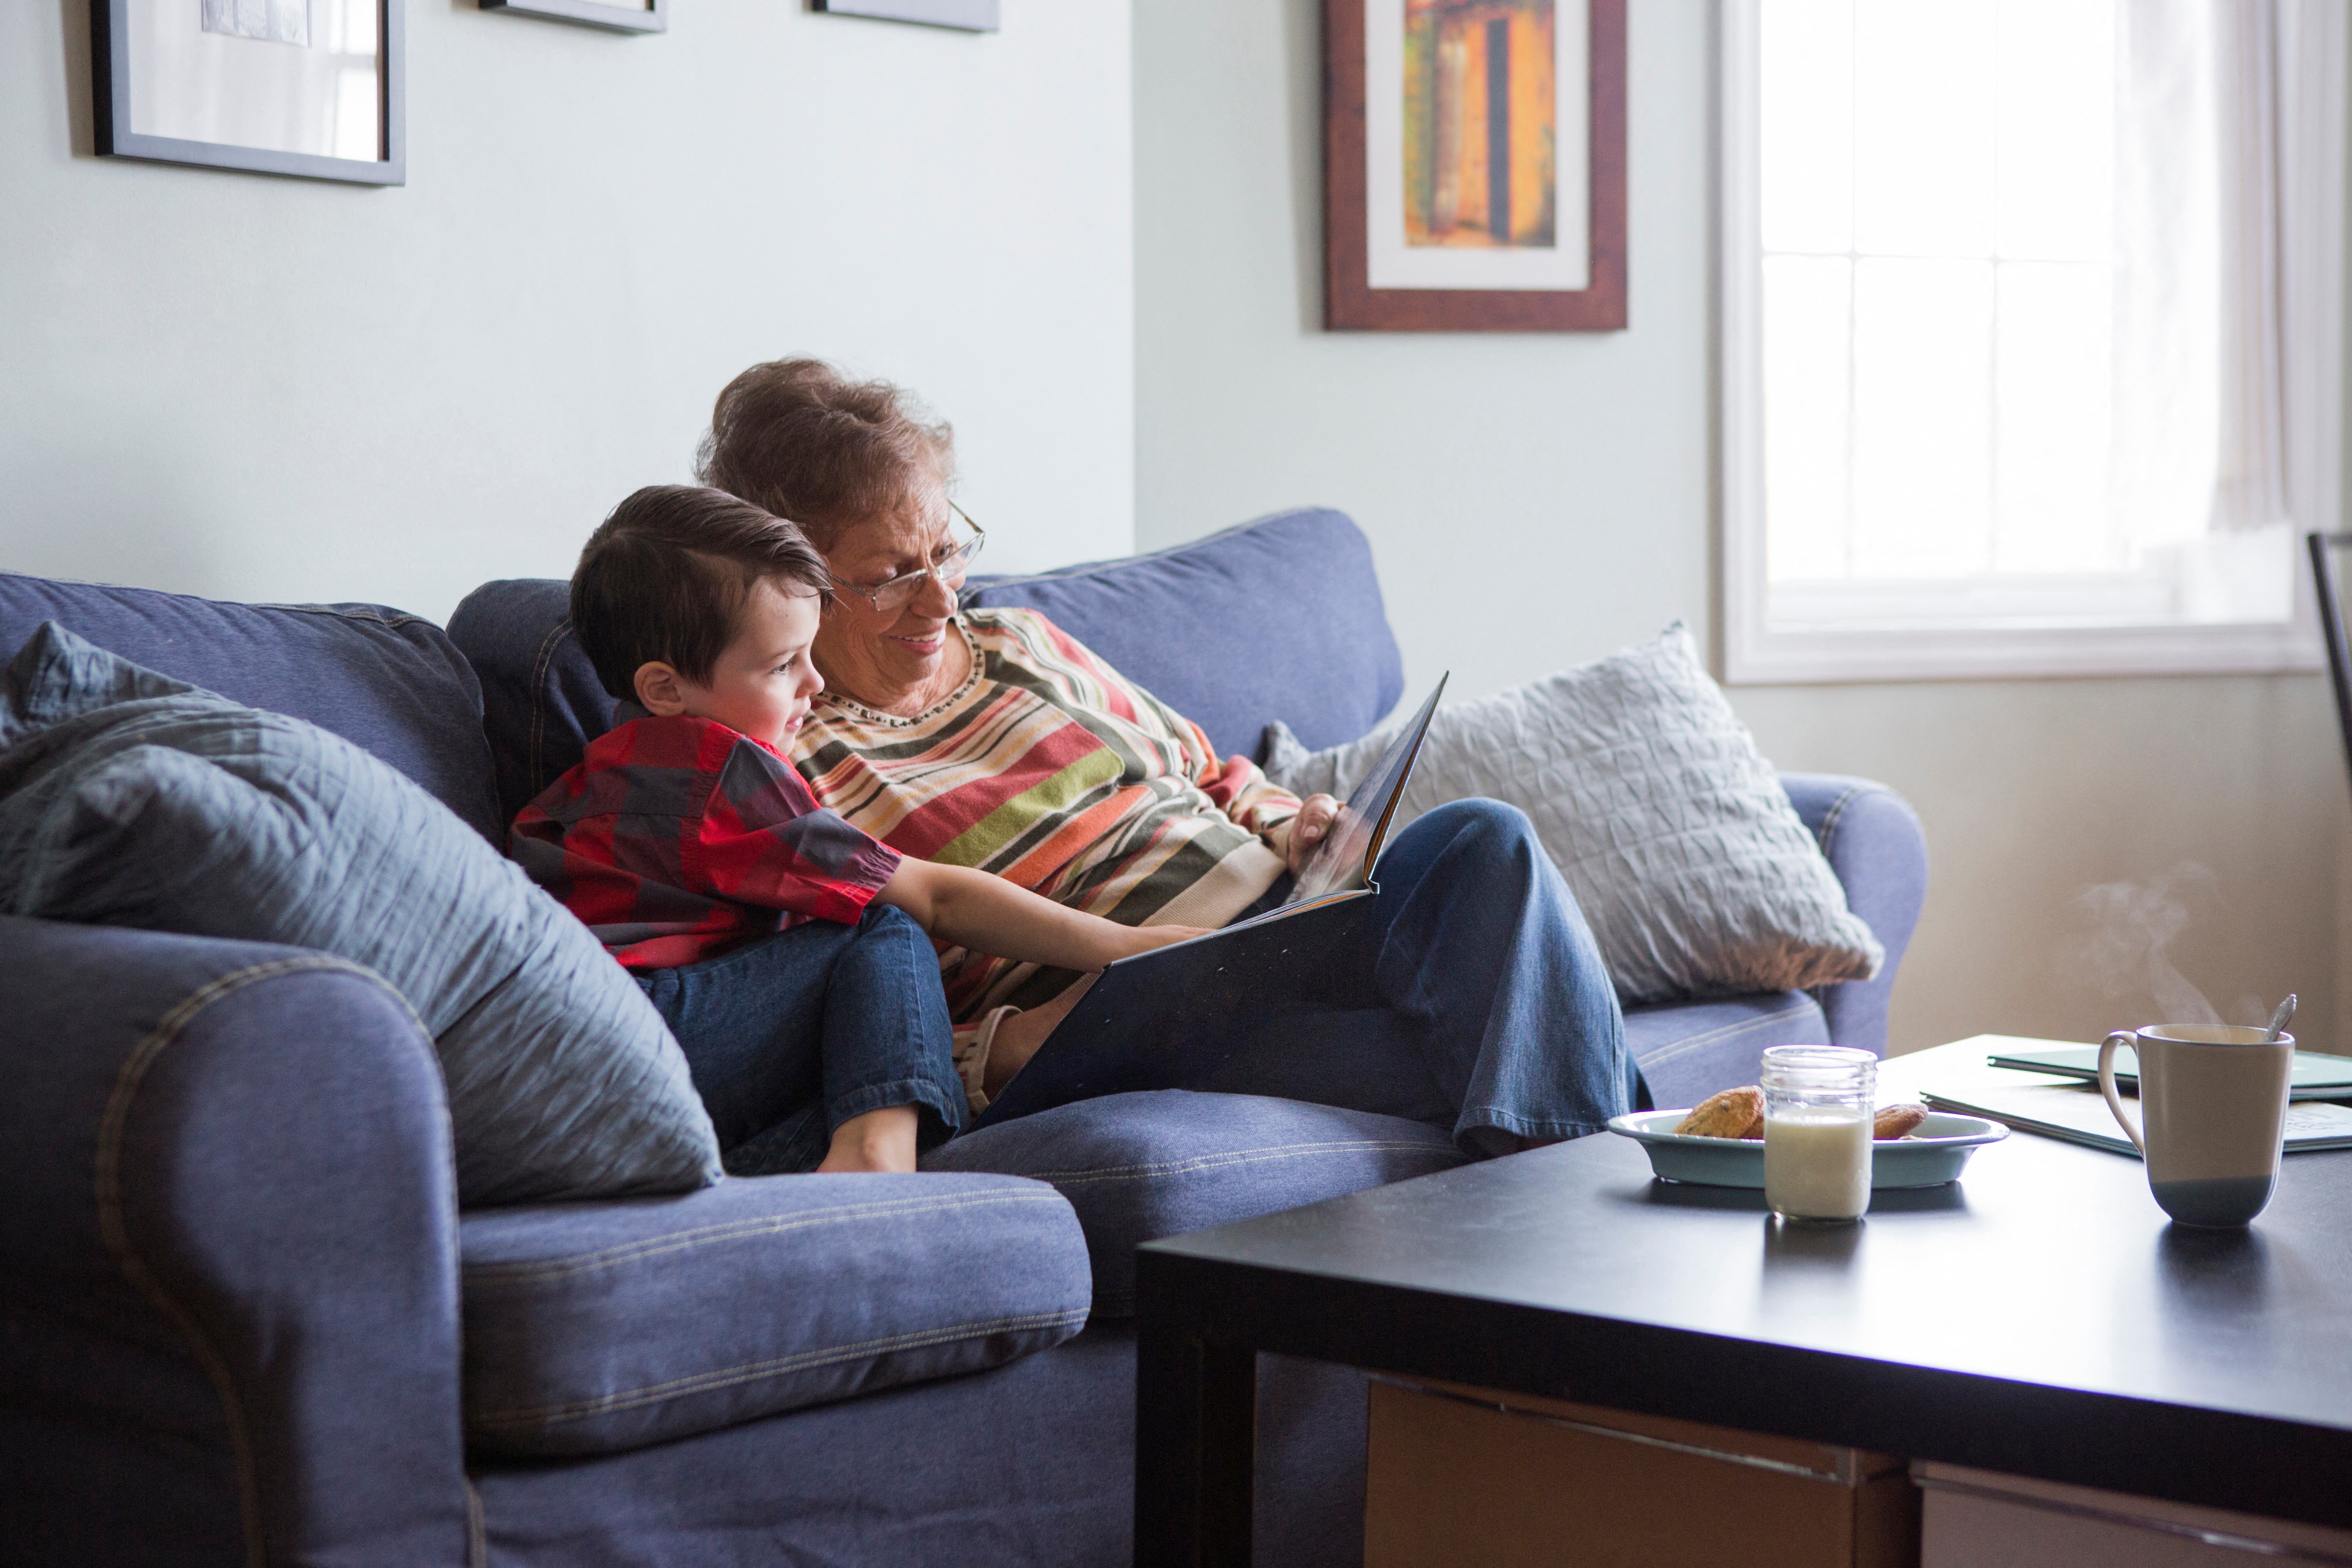 Egy amerikai agykutatás szerint a nagymamák jobban kötődhetnek az unokáikhoz, mint felnőtt gyerekeikhez